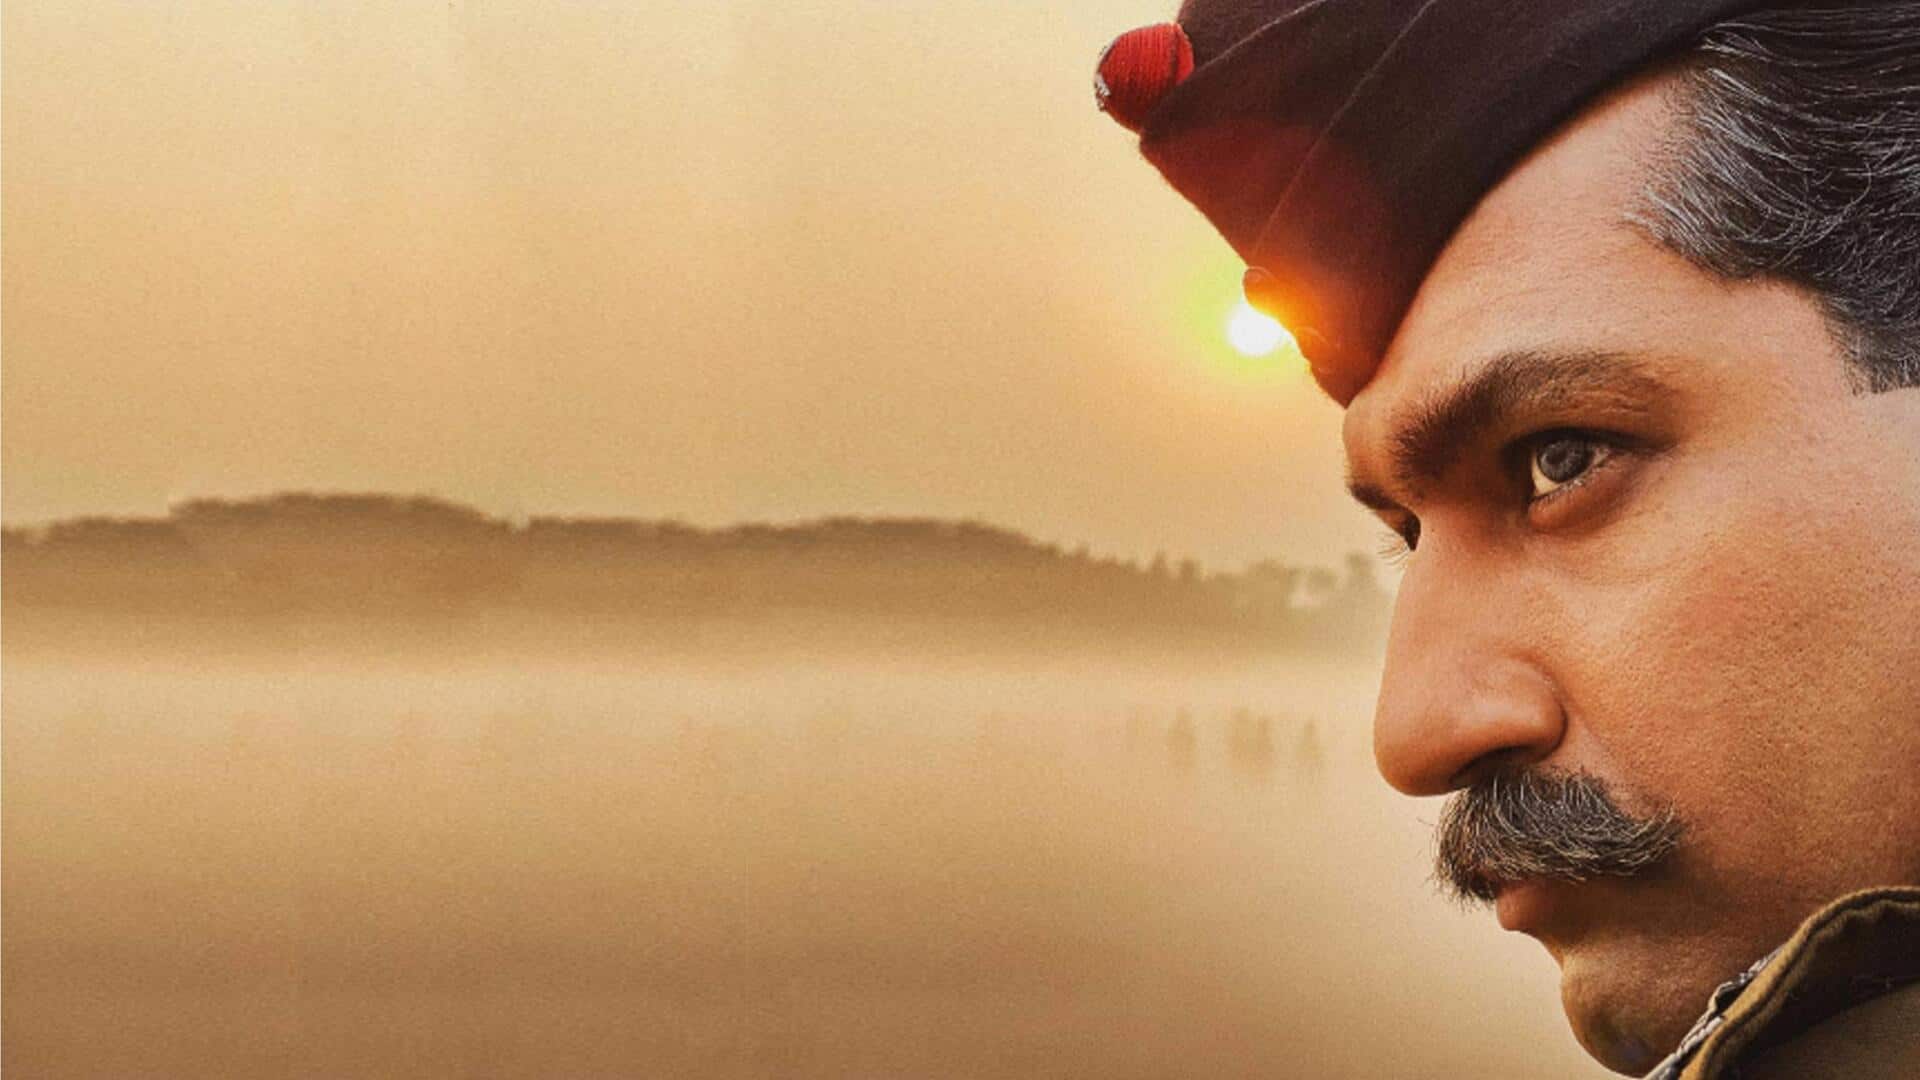 फिल्म 'सैम बहादुर' का टीजर जारी, विक्की कौशल का दिखा एकदम अलग अवतार 